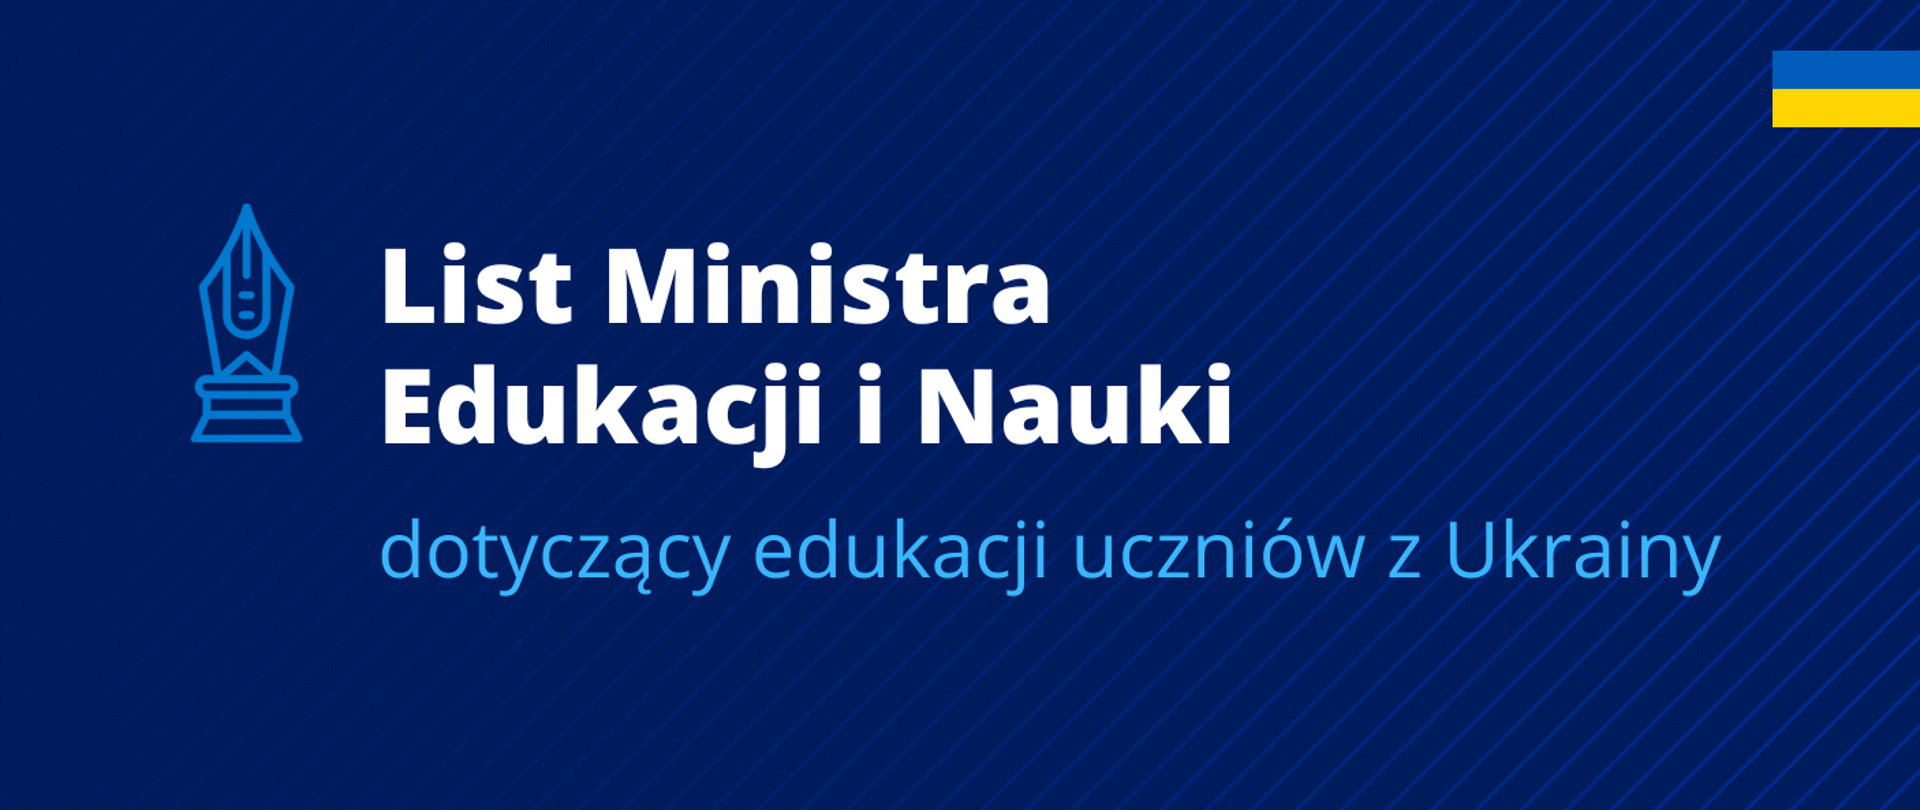 Grafika - na niebieskim tle stalówka, flaga Ukrainy i napis List ministra dotyczący edukacji uczniów z Ukrainy.